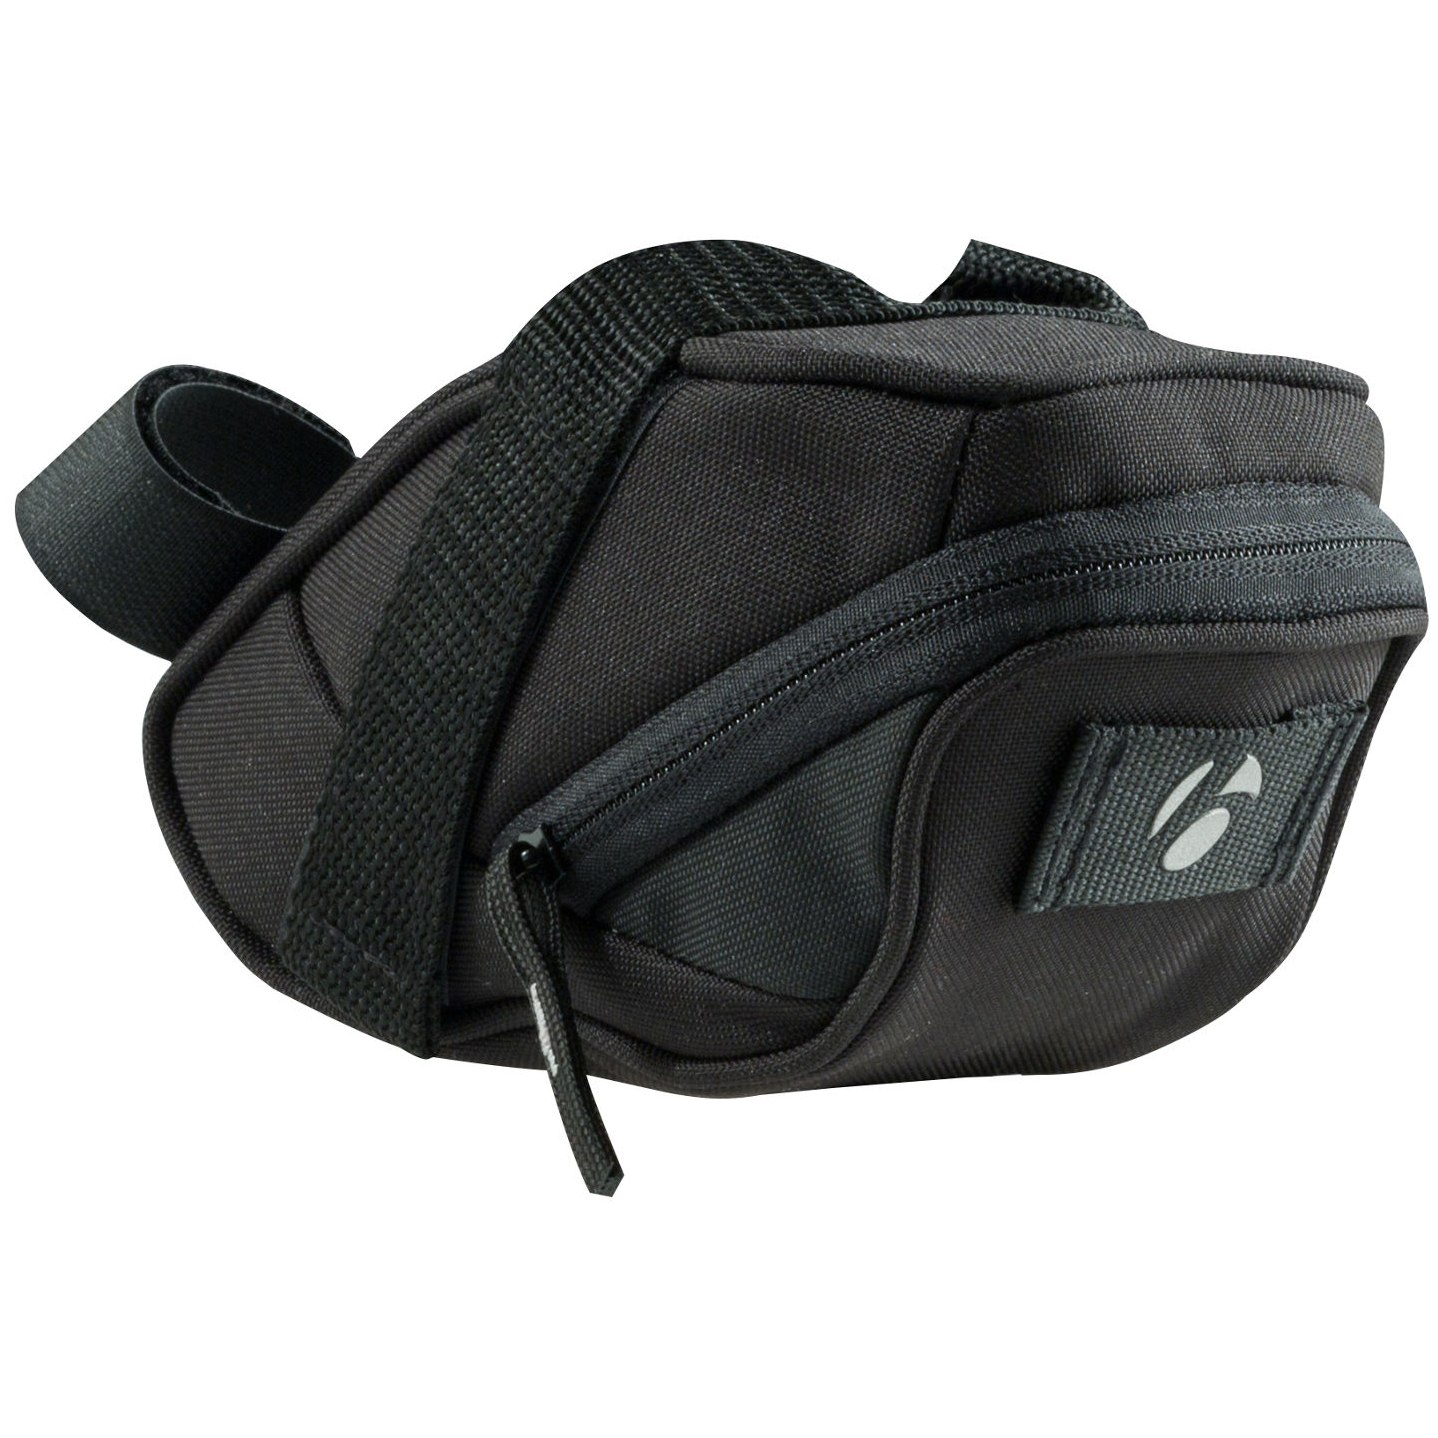 Produktbild von Bontrager Comp Medium Seat Pack Satteltasche - black